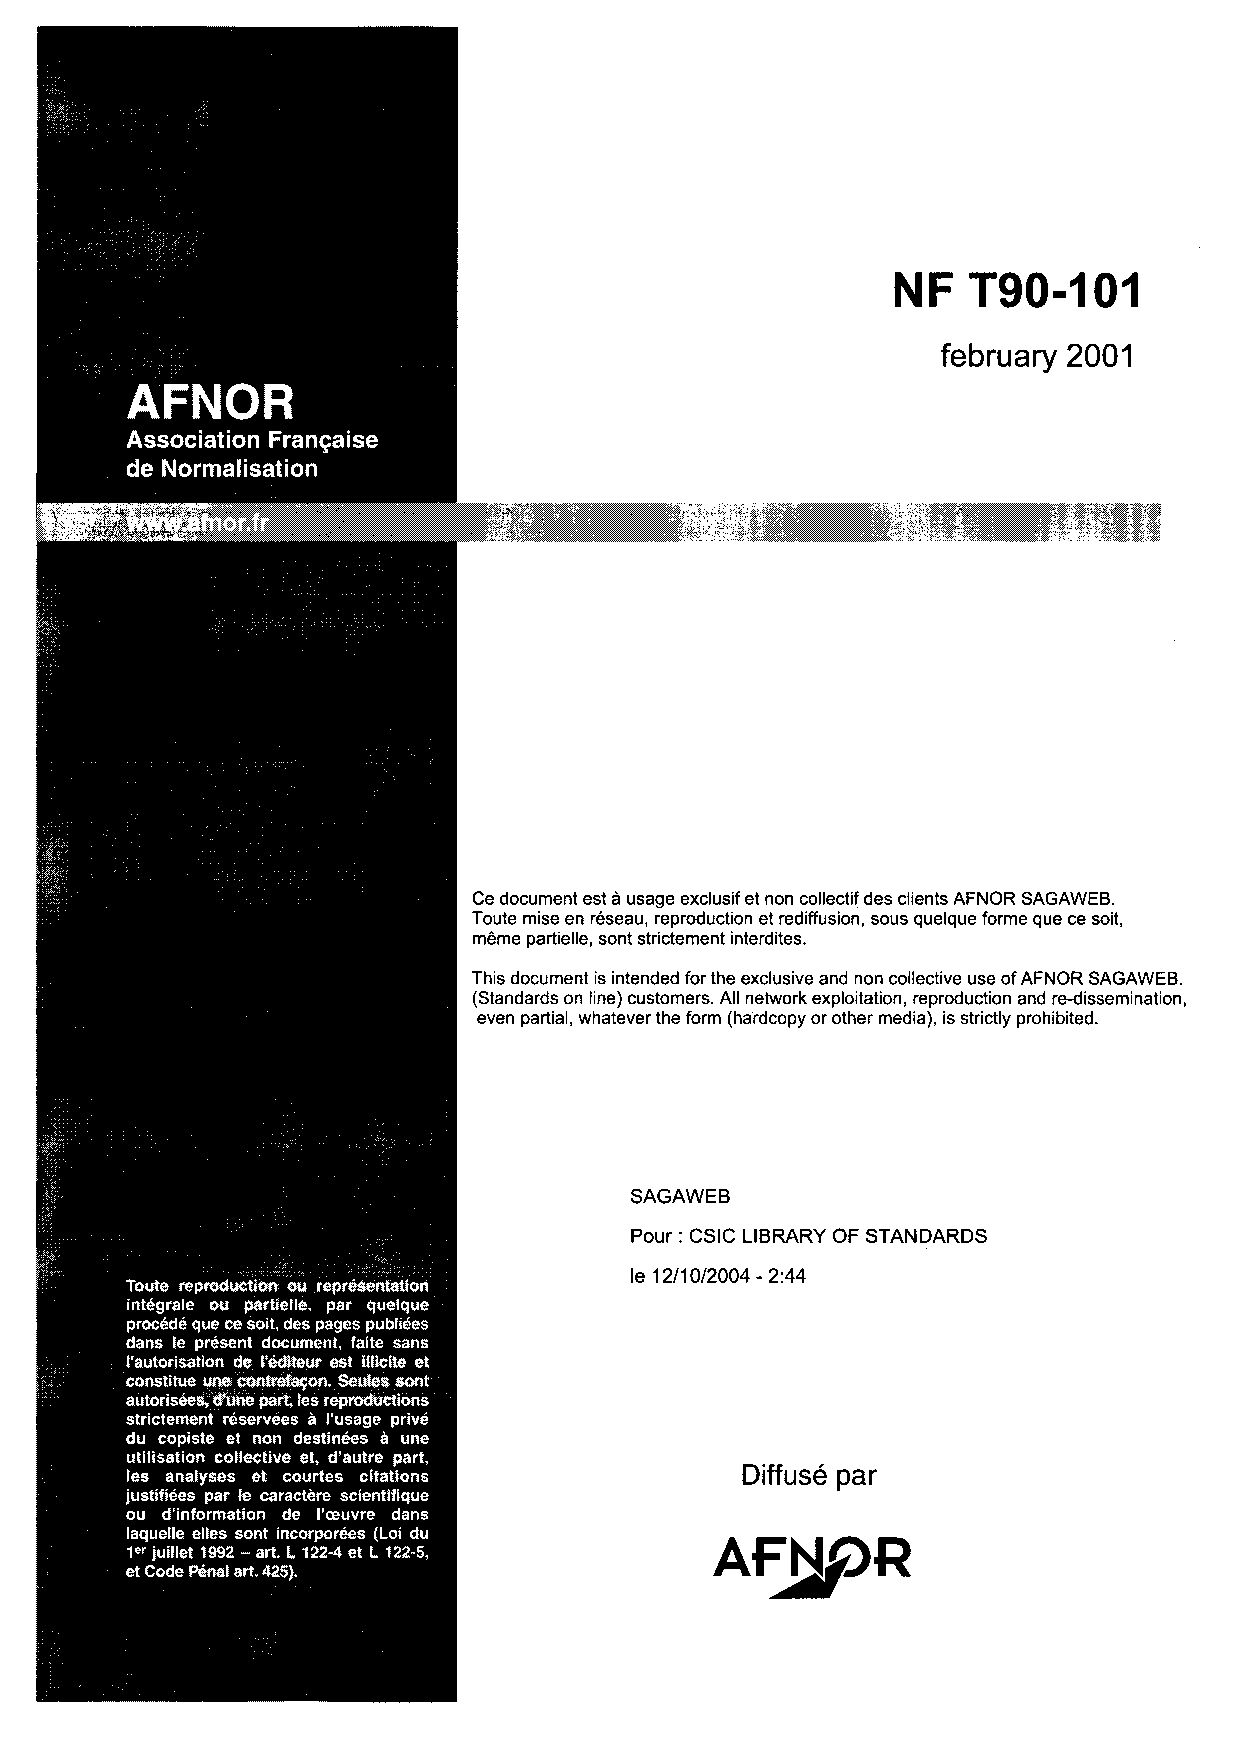 NF T90-101:2001